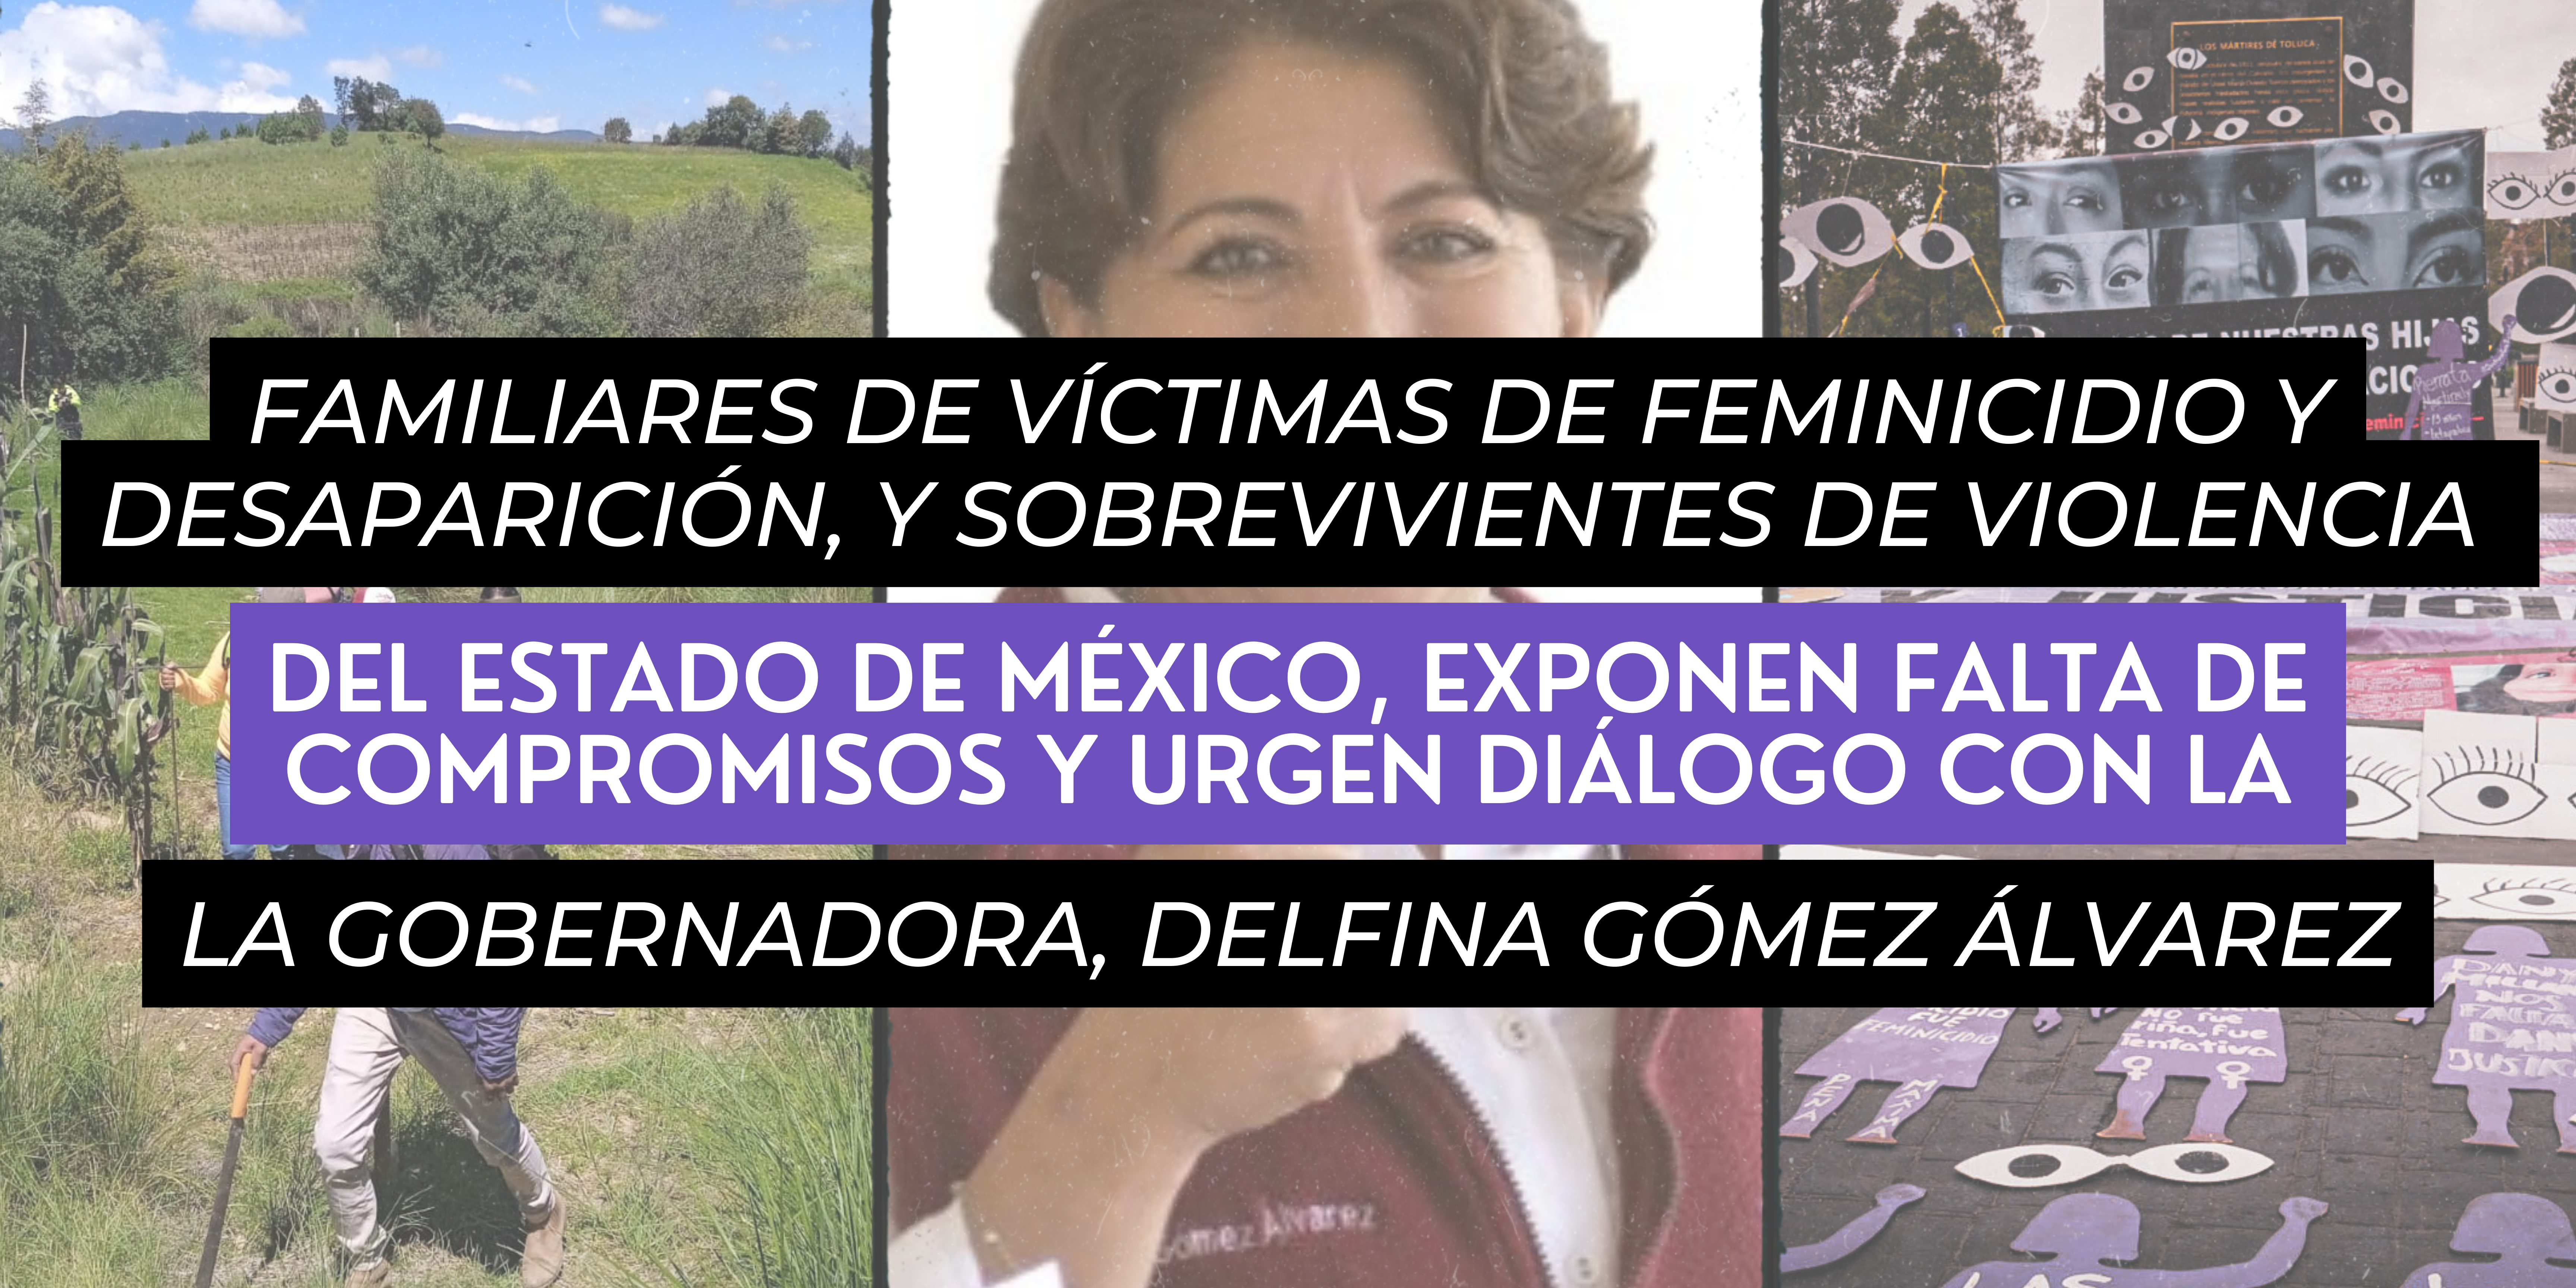 Familiares de víctimas de feminicidio en el Edomex piden audiencia con la gobernadora